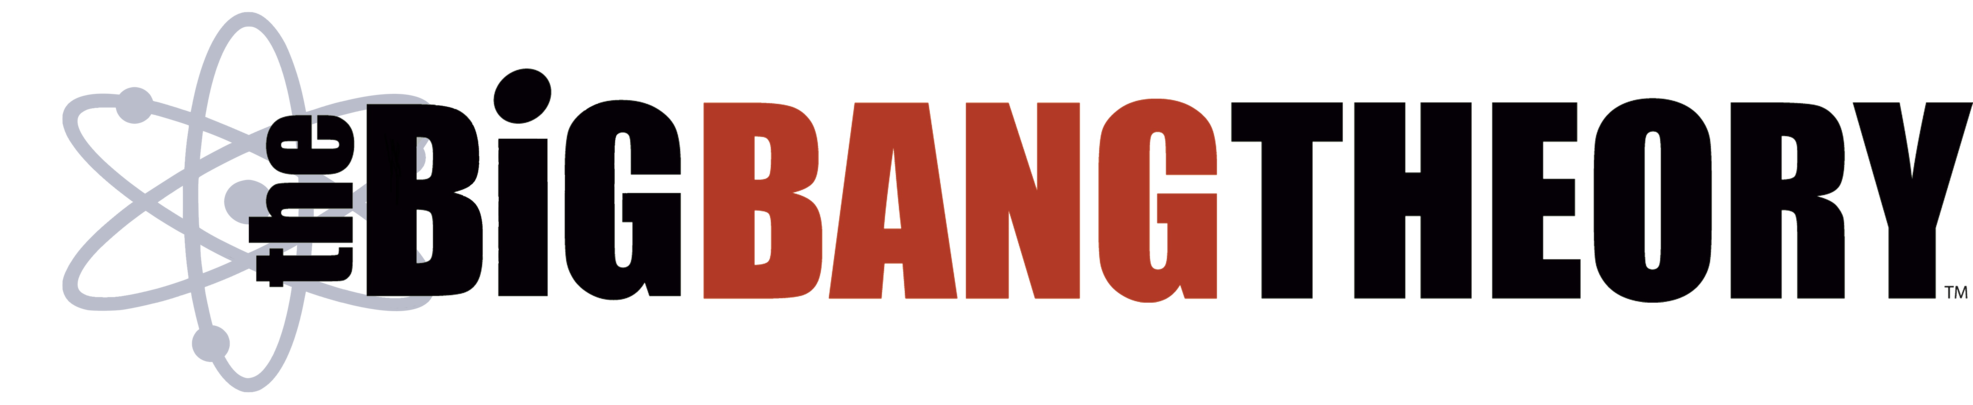 The Big Bang Theory Logo Transparant Image